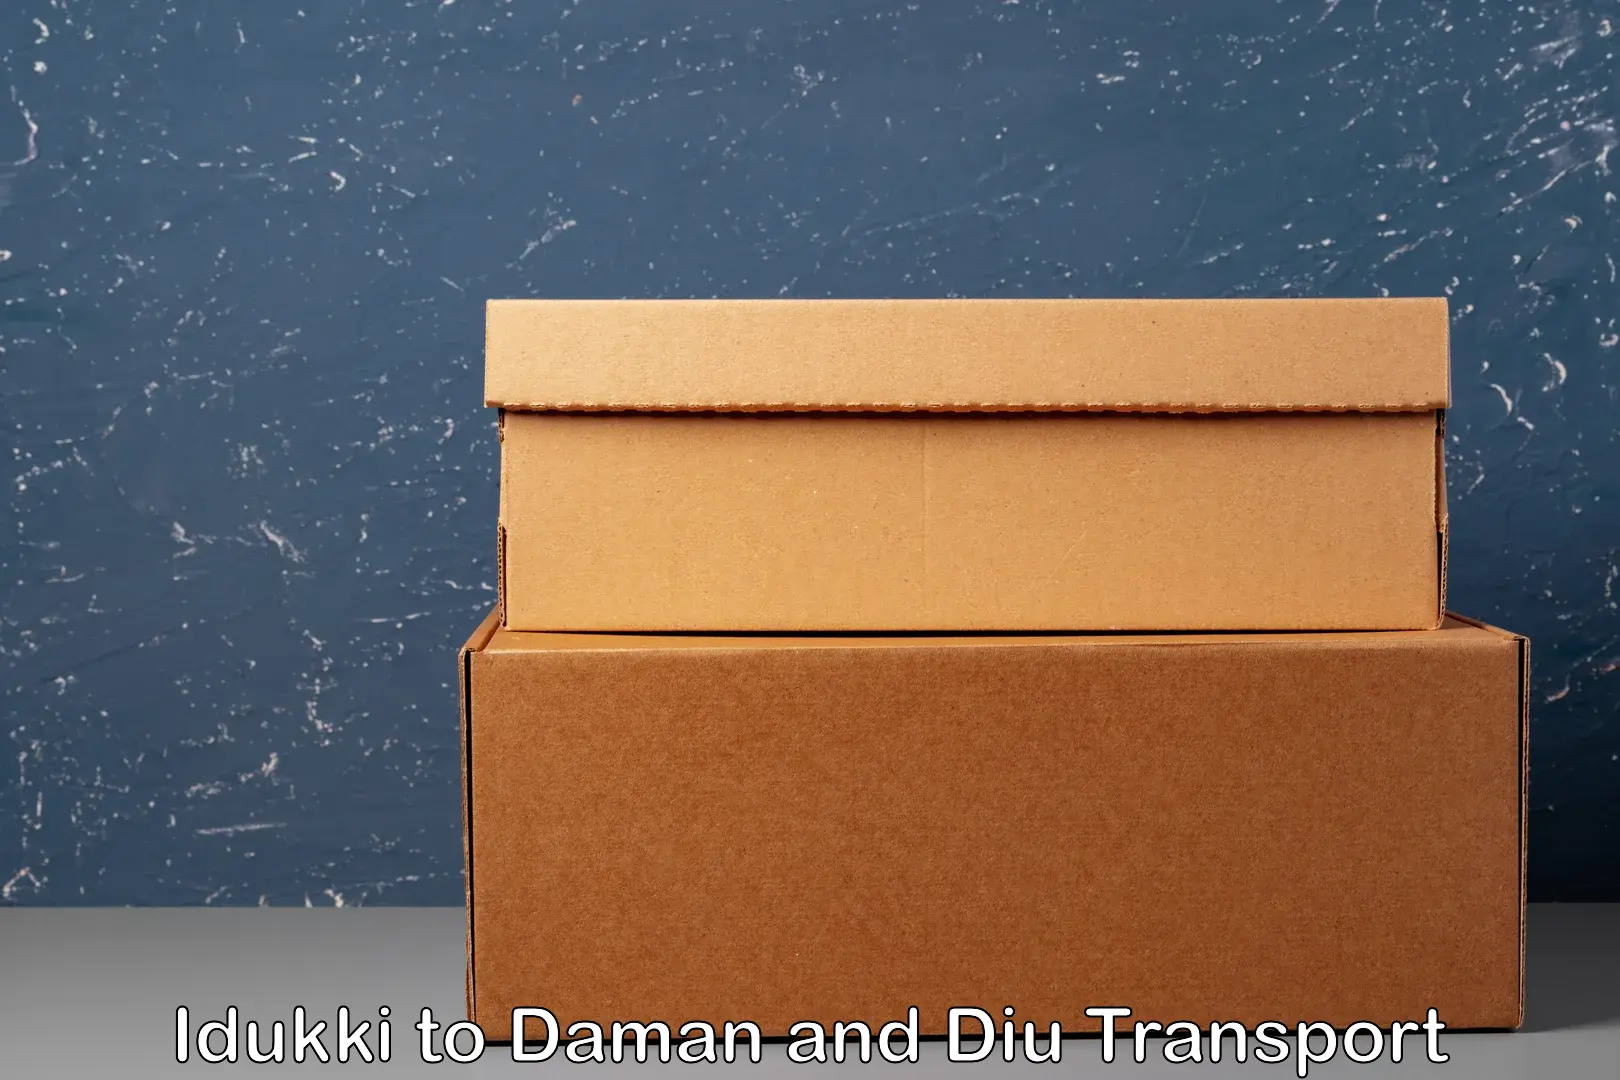 Air cargo transport services Idukki to Daman and Diu